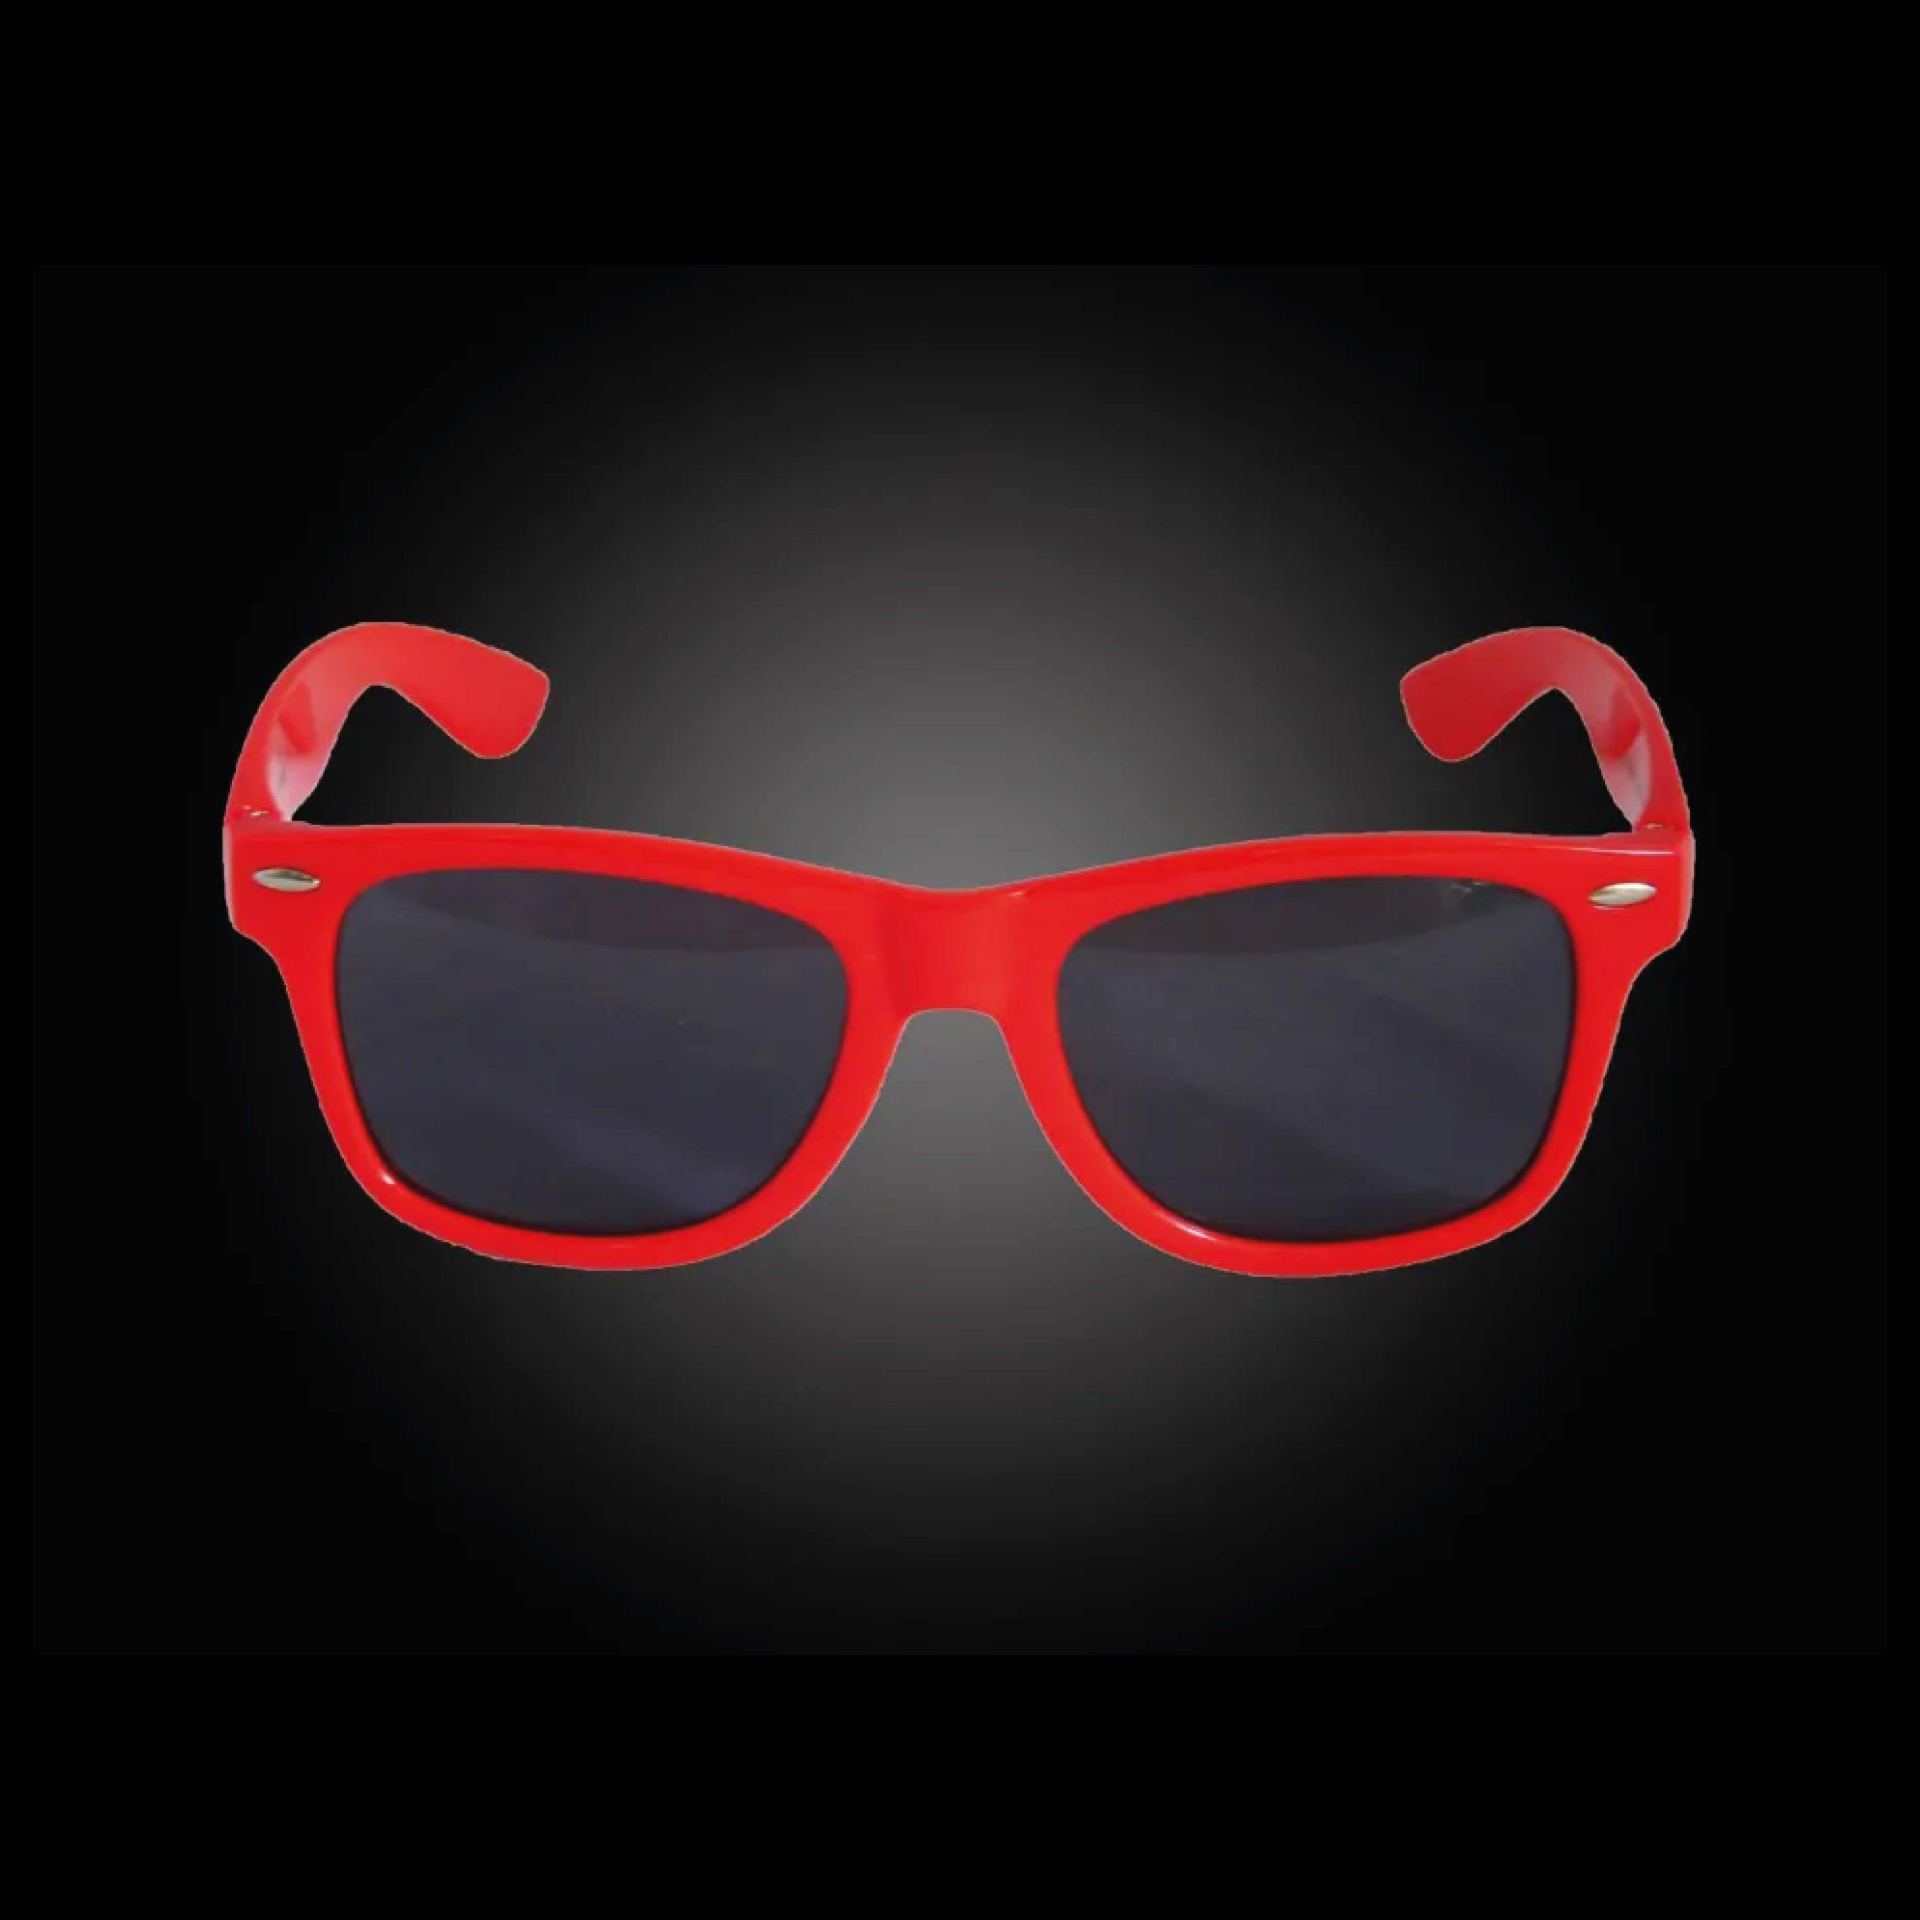 Goedkope Festival zonnebril Rood